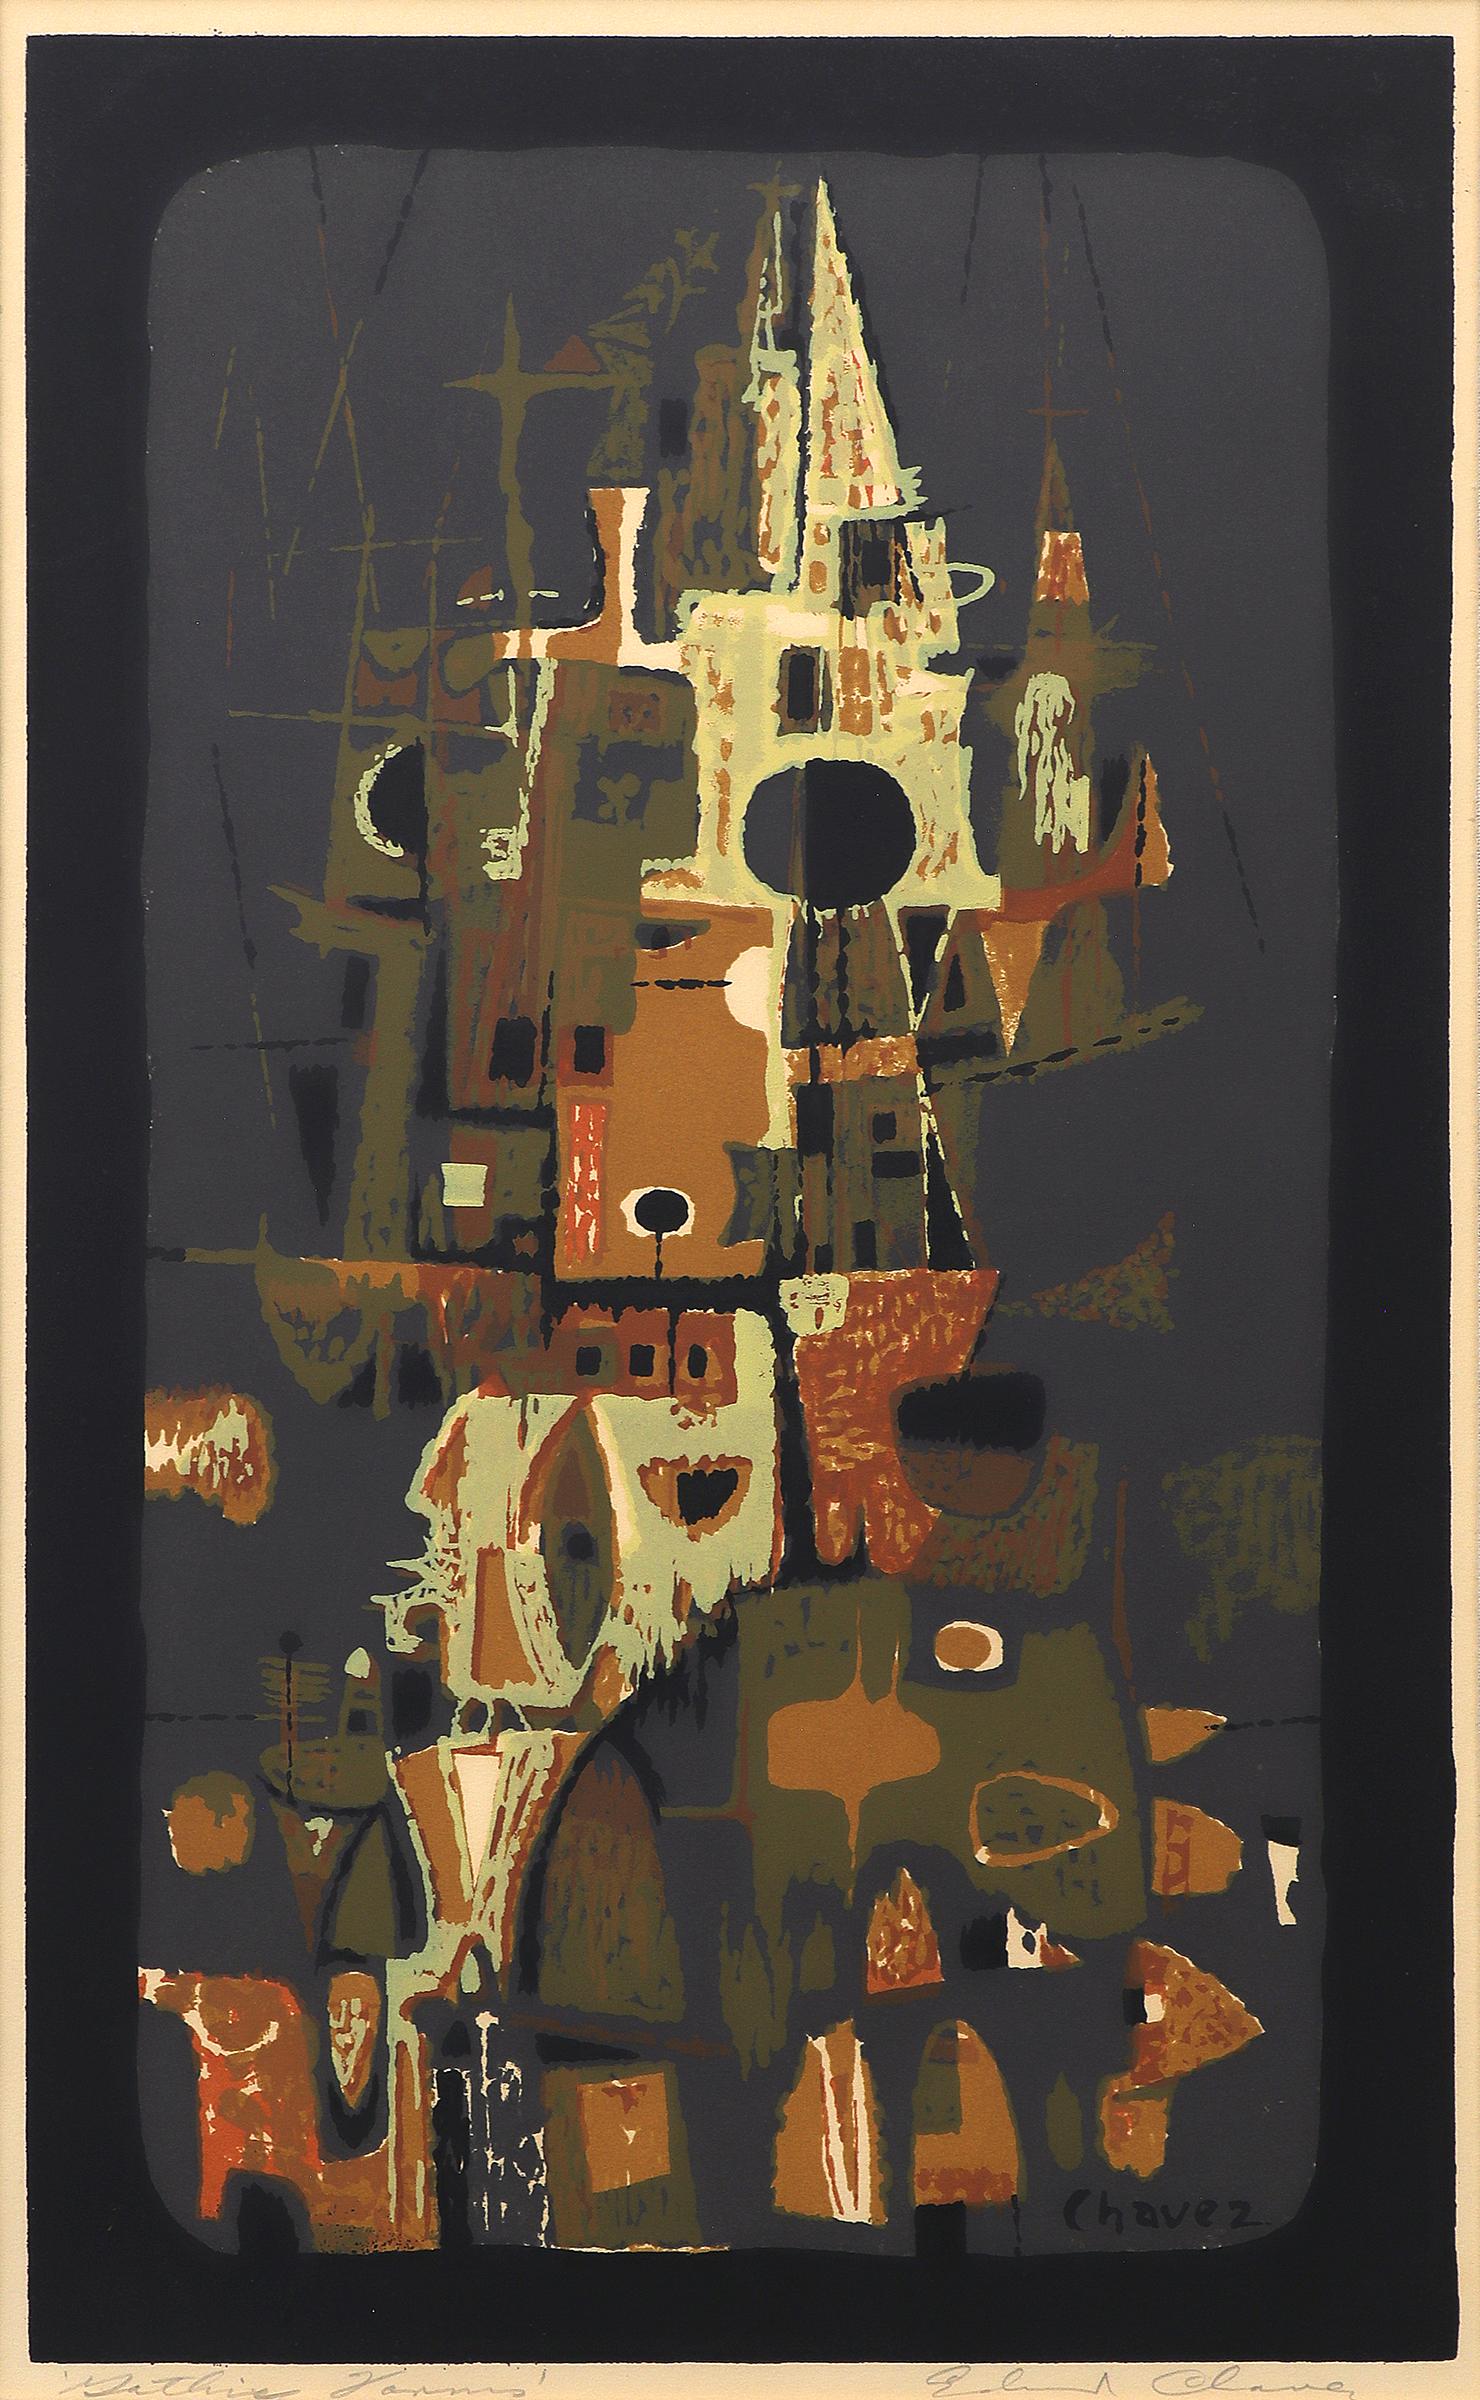 Tours gothiques, sérigraphie moderne abstraite des années 1950, orange, marron, vert - Print de Edward Chavez